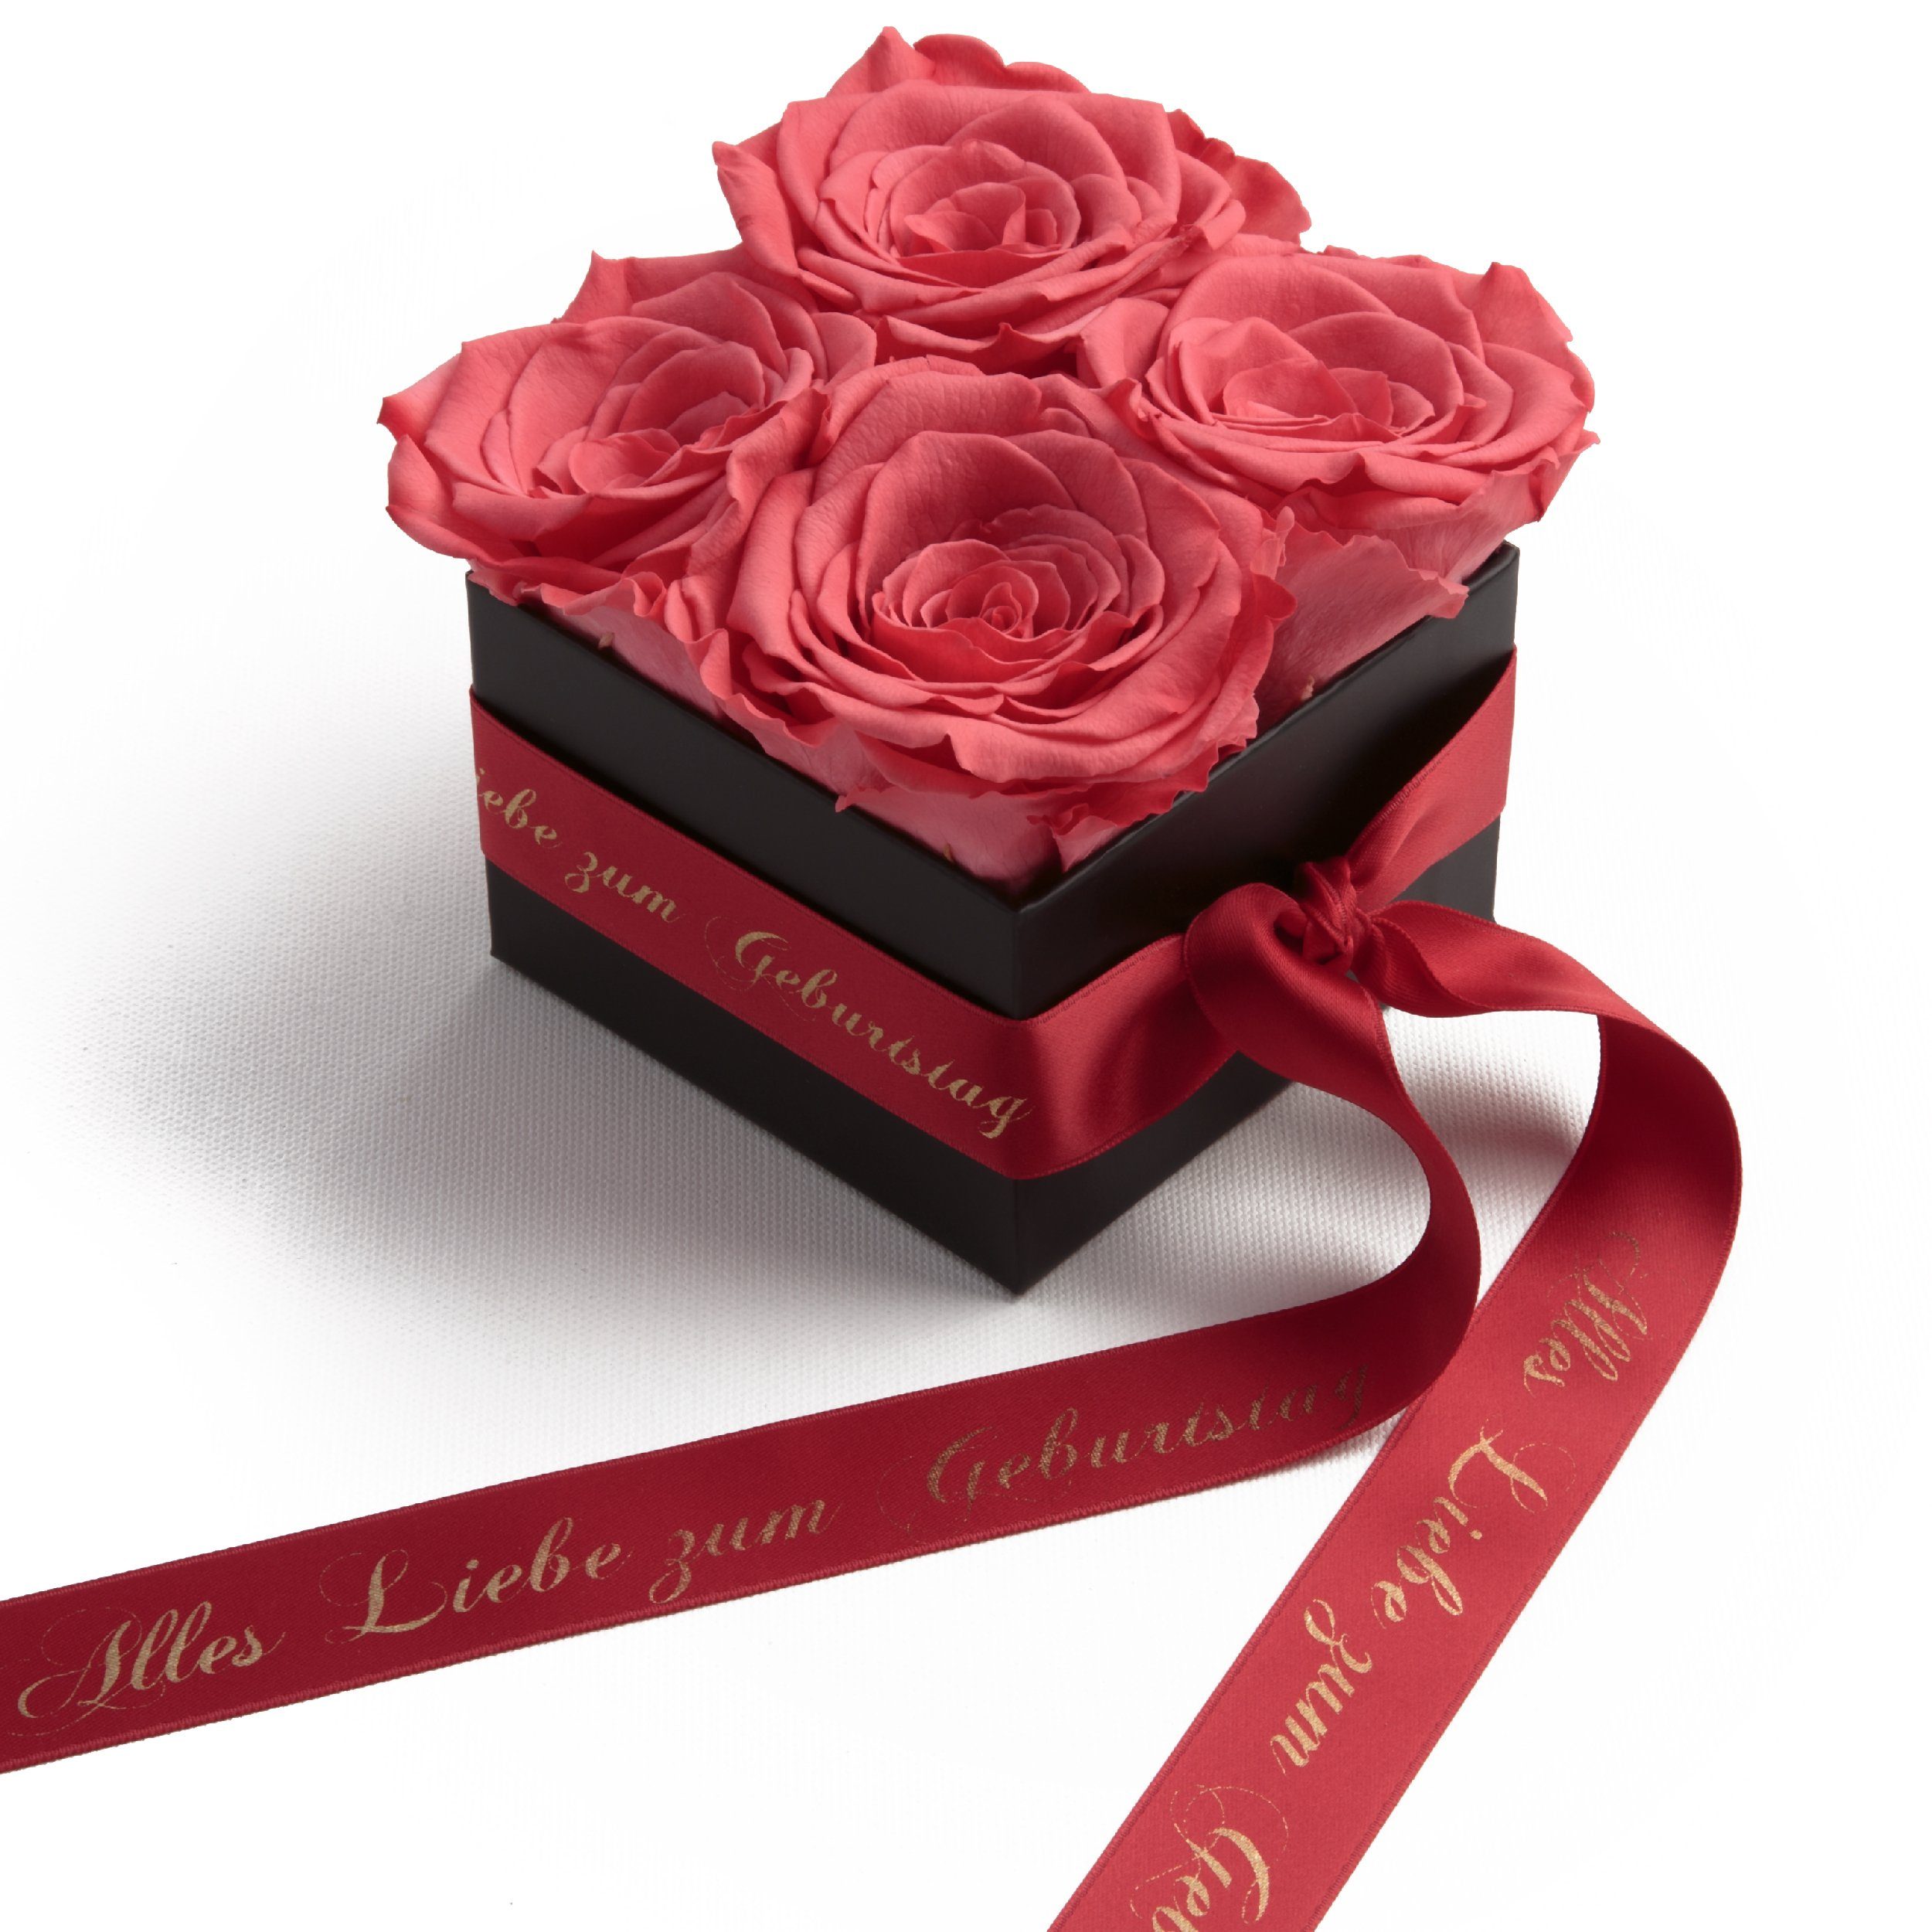 ROSEMARIE SCHULZ Heidelberg Dekoobjekt Rosenbox echte Rosen Alles Liebe zum Geburtstag Geschenk für Frauen (1 St), Echte konservierte Rosen Korall